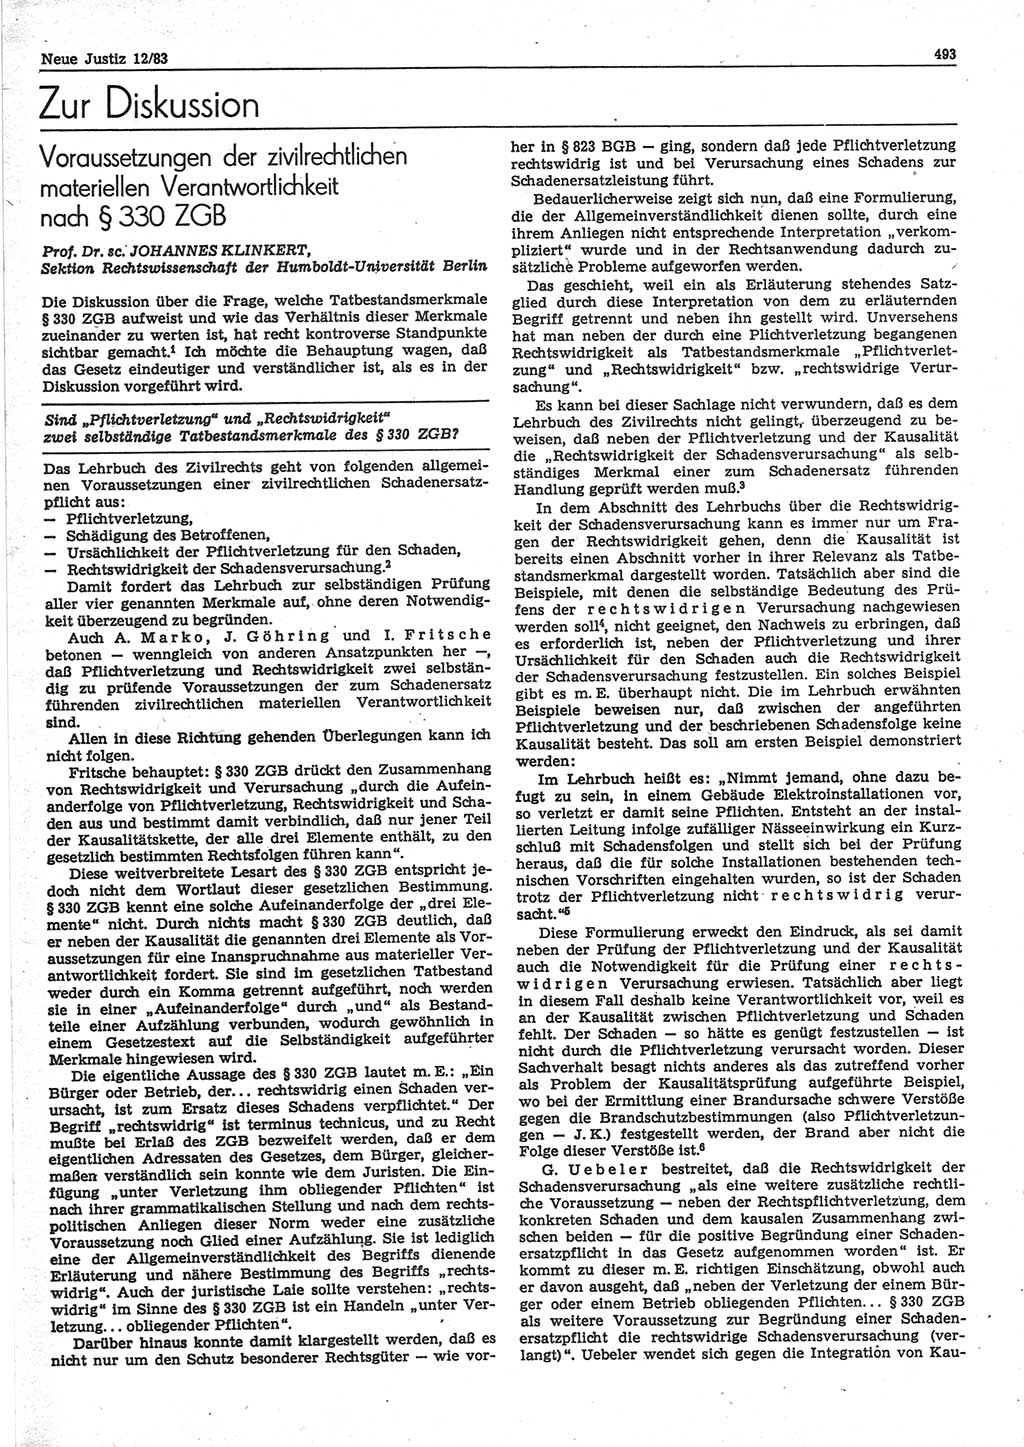 Neue Justiz (NJ), Zeitschrift für sozialistisches Recht und Gesetzlichkeit [Deutsche Demokratische Republik (DDR)], 37. Jahrgang 1983, Seite 493 (NJ DDR 1983, S. 493)